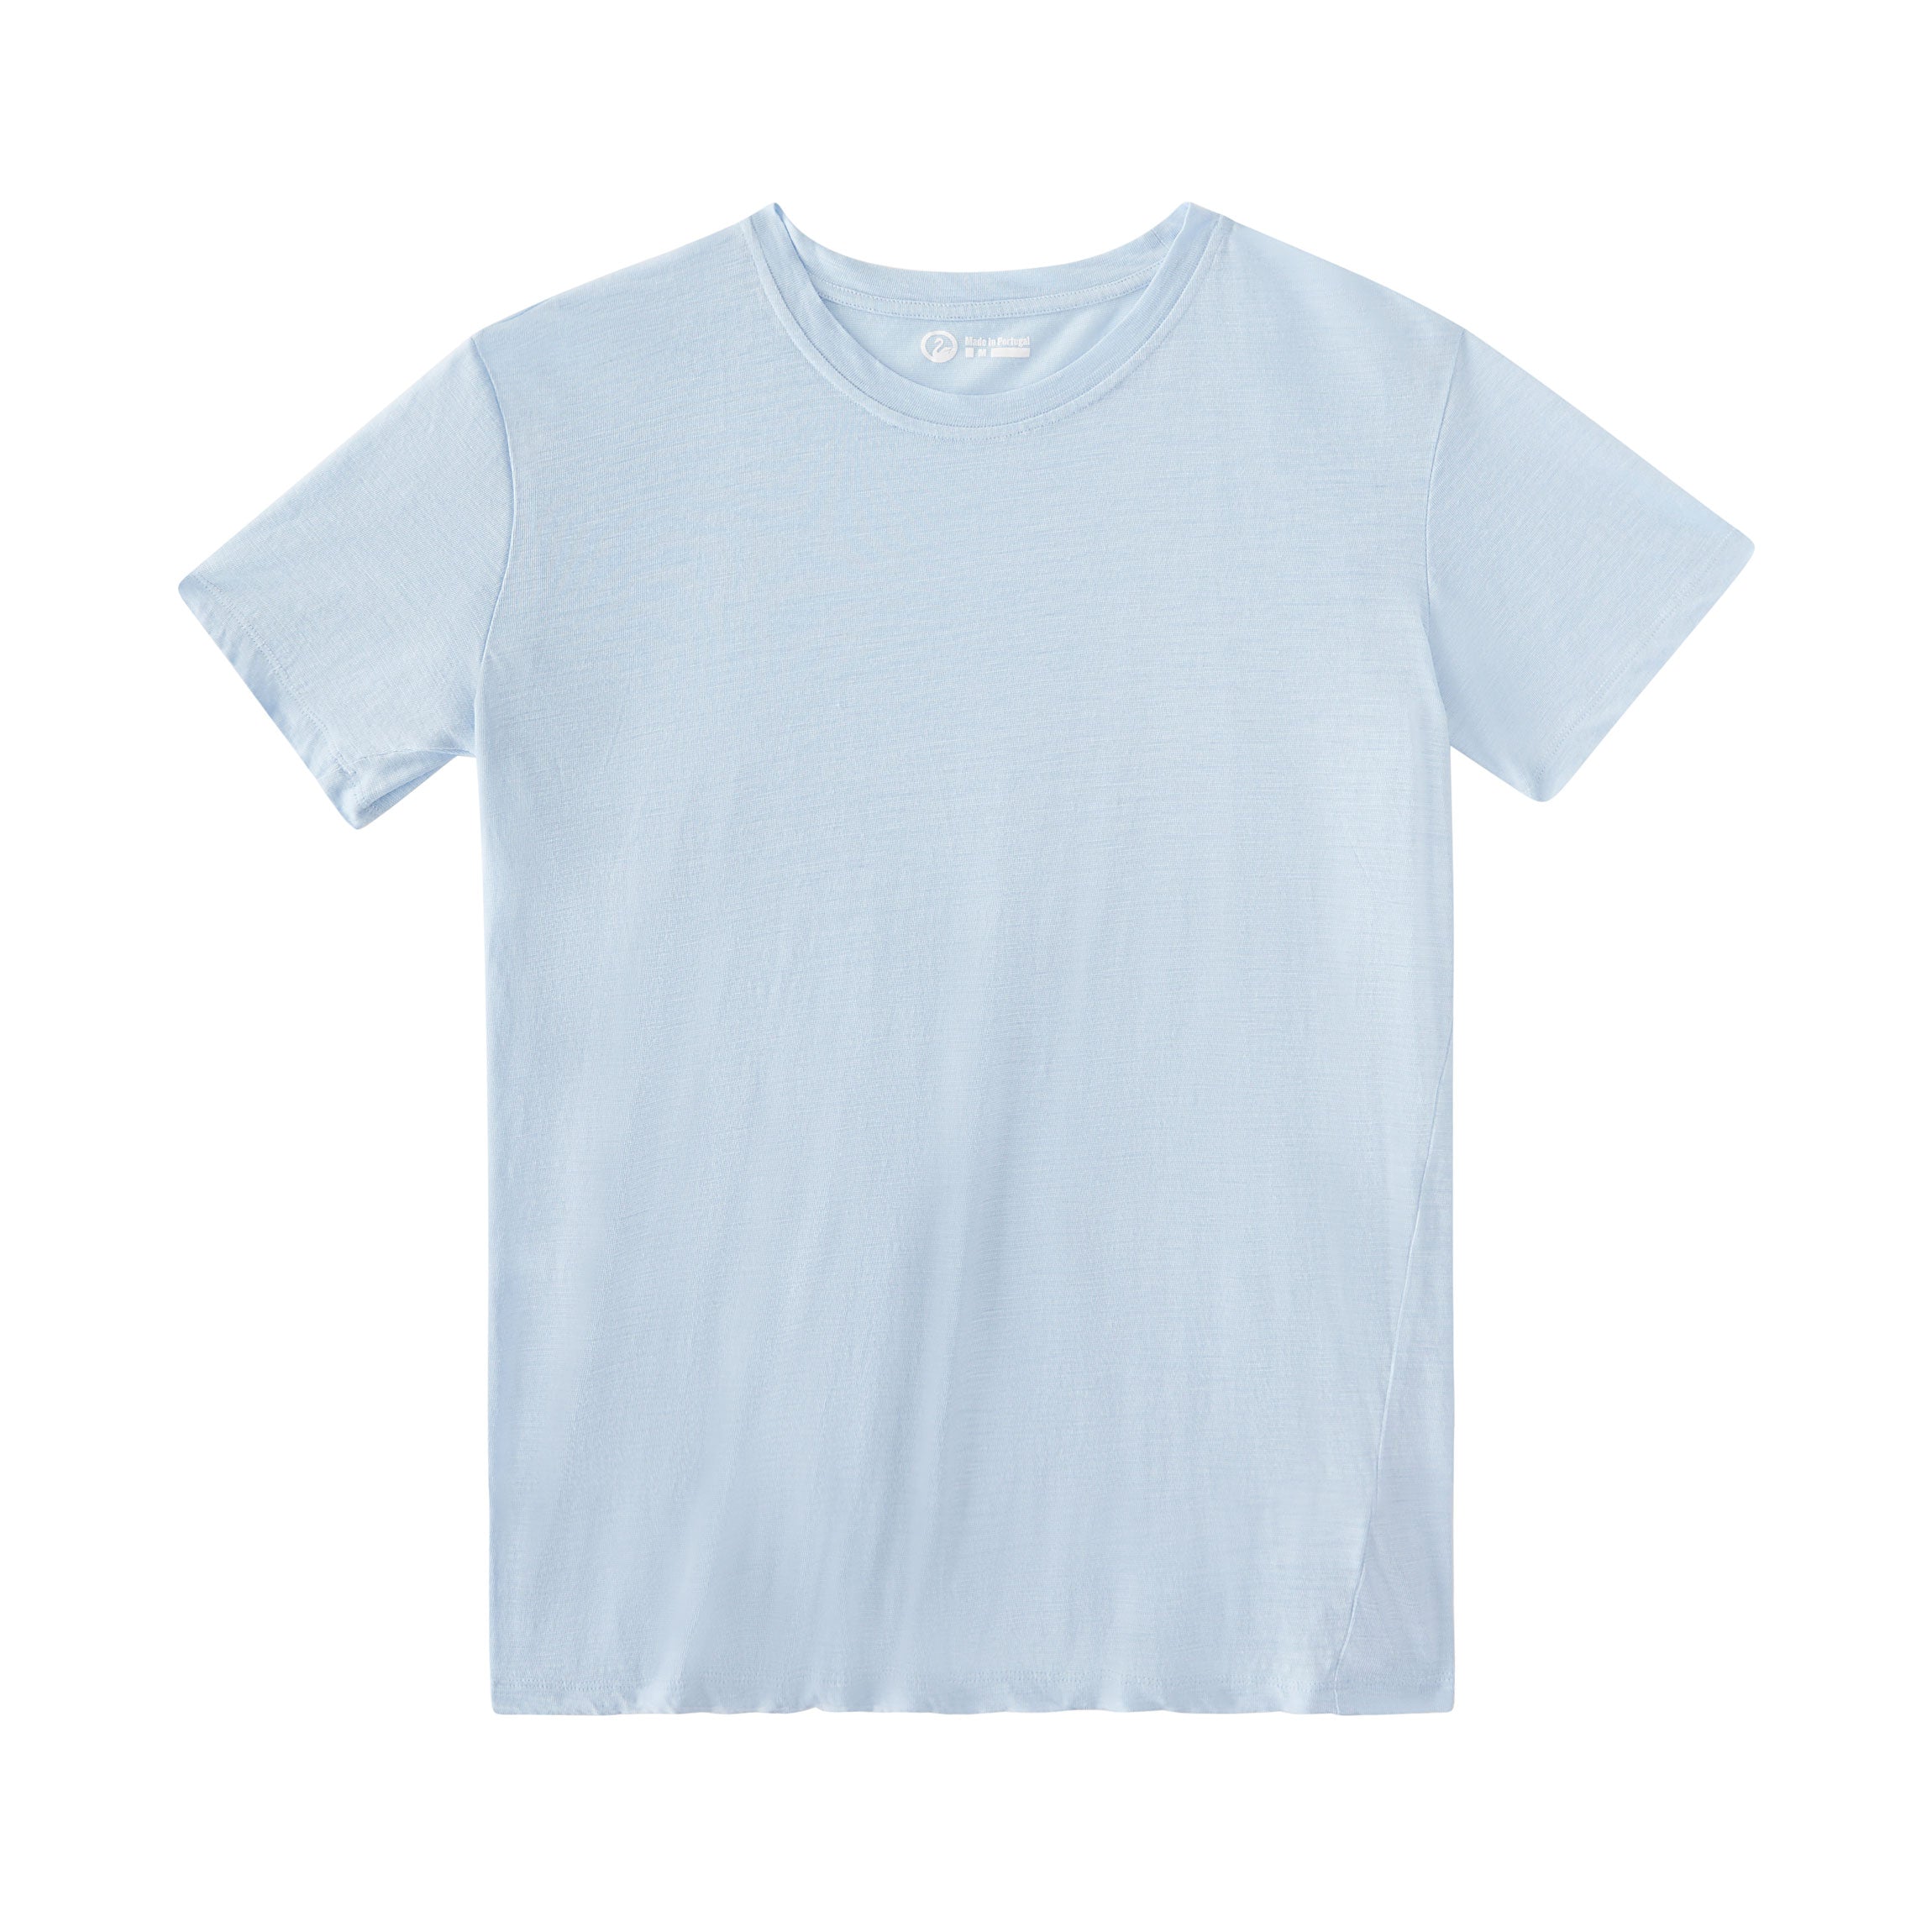 OUTLIER - Ramielust Cut One T-Shirt